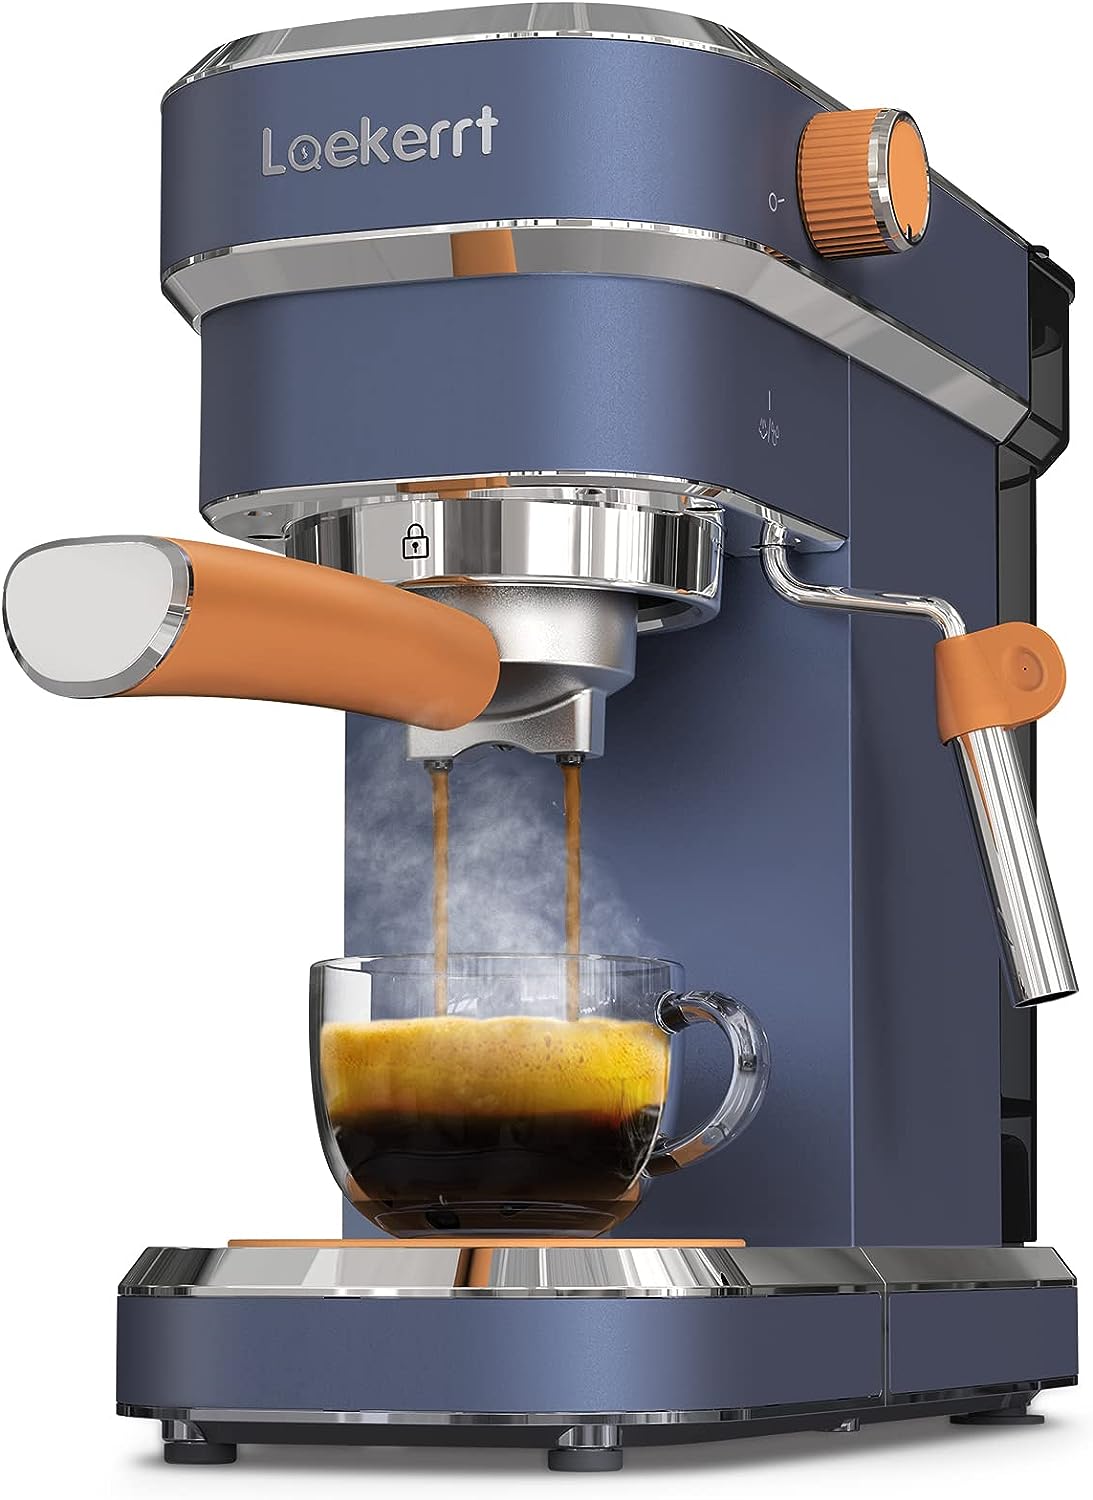 Laekerrt Espresso Machine 20 Bar Espresso Maker Review